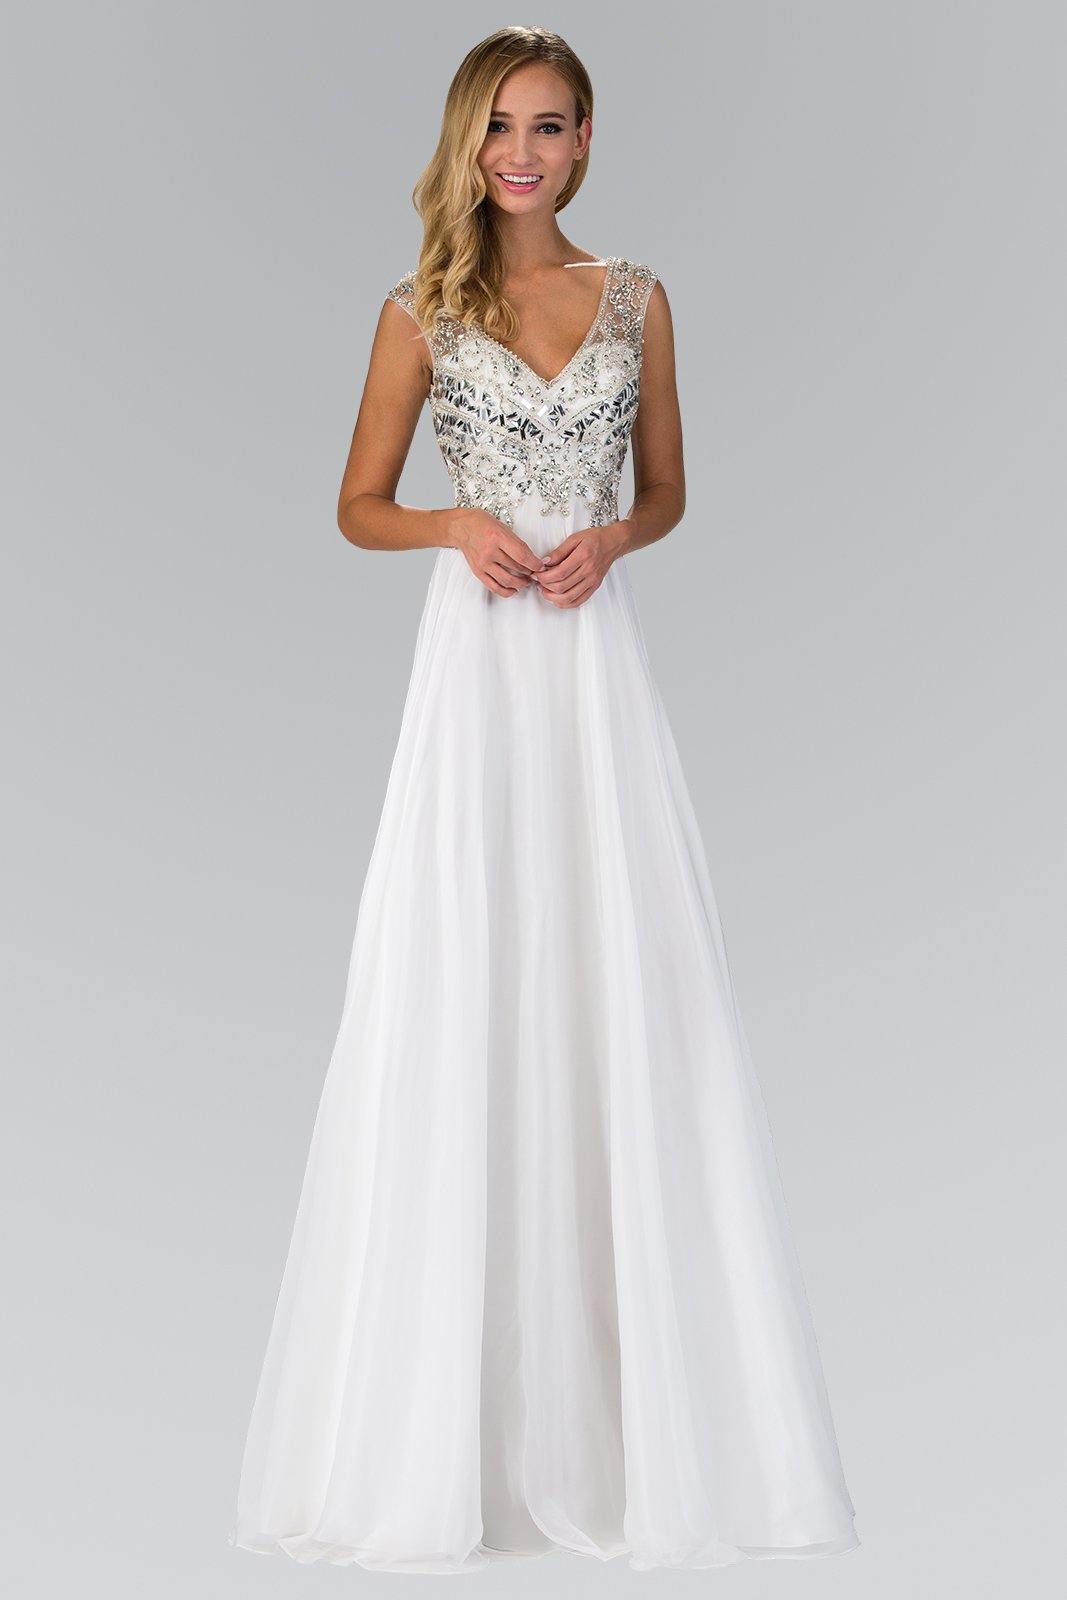 A-Line Long Wedding Dress - The Dress Outlet Elizabeth K